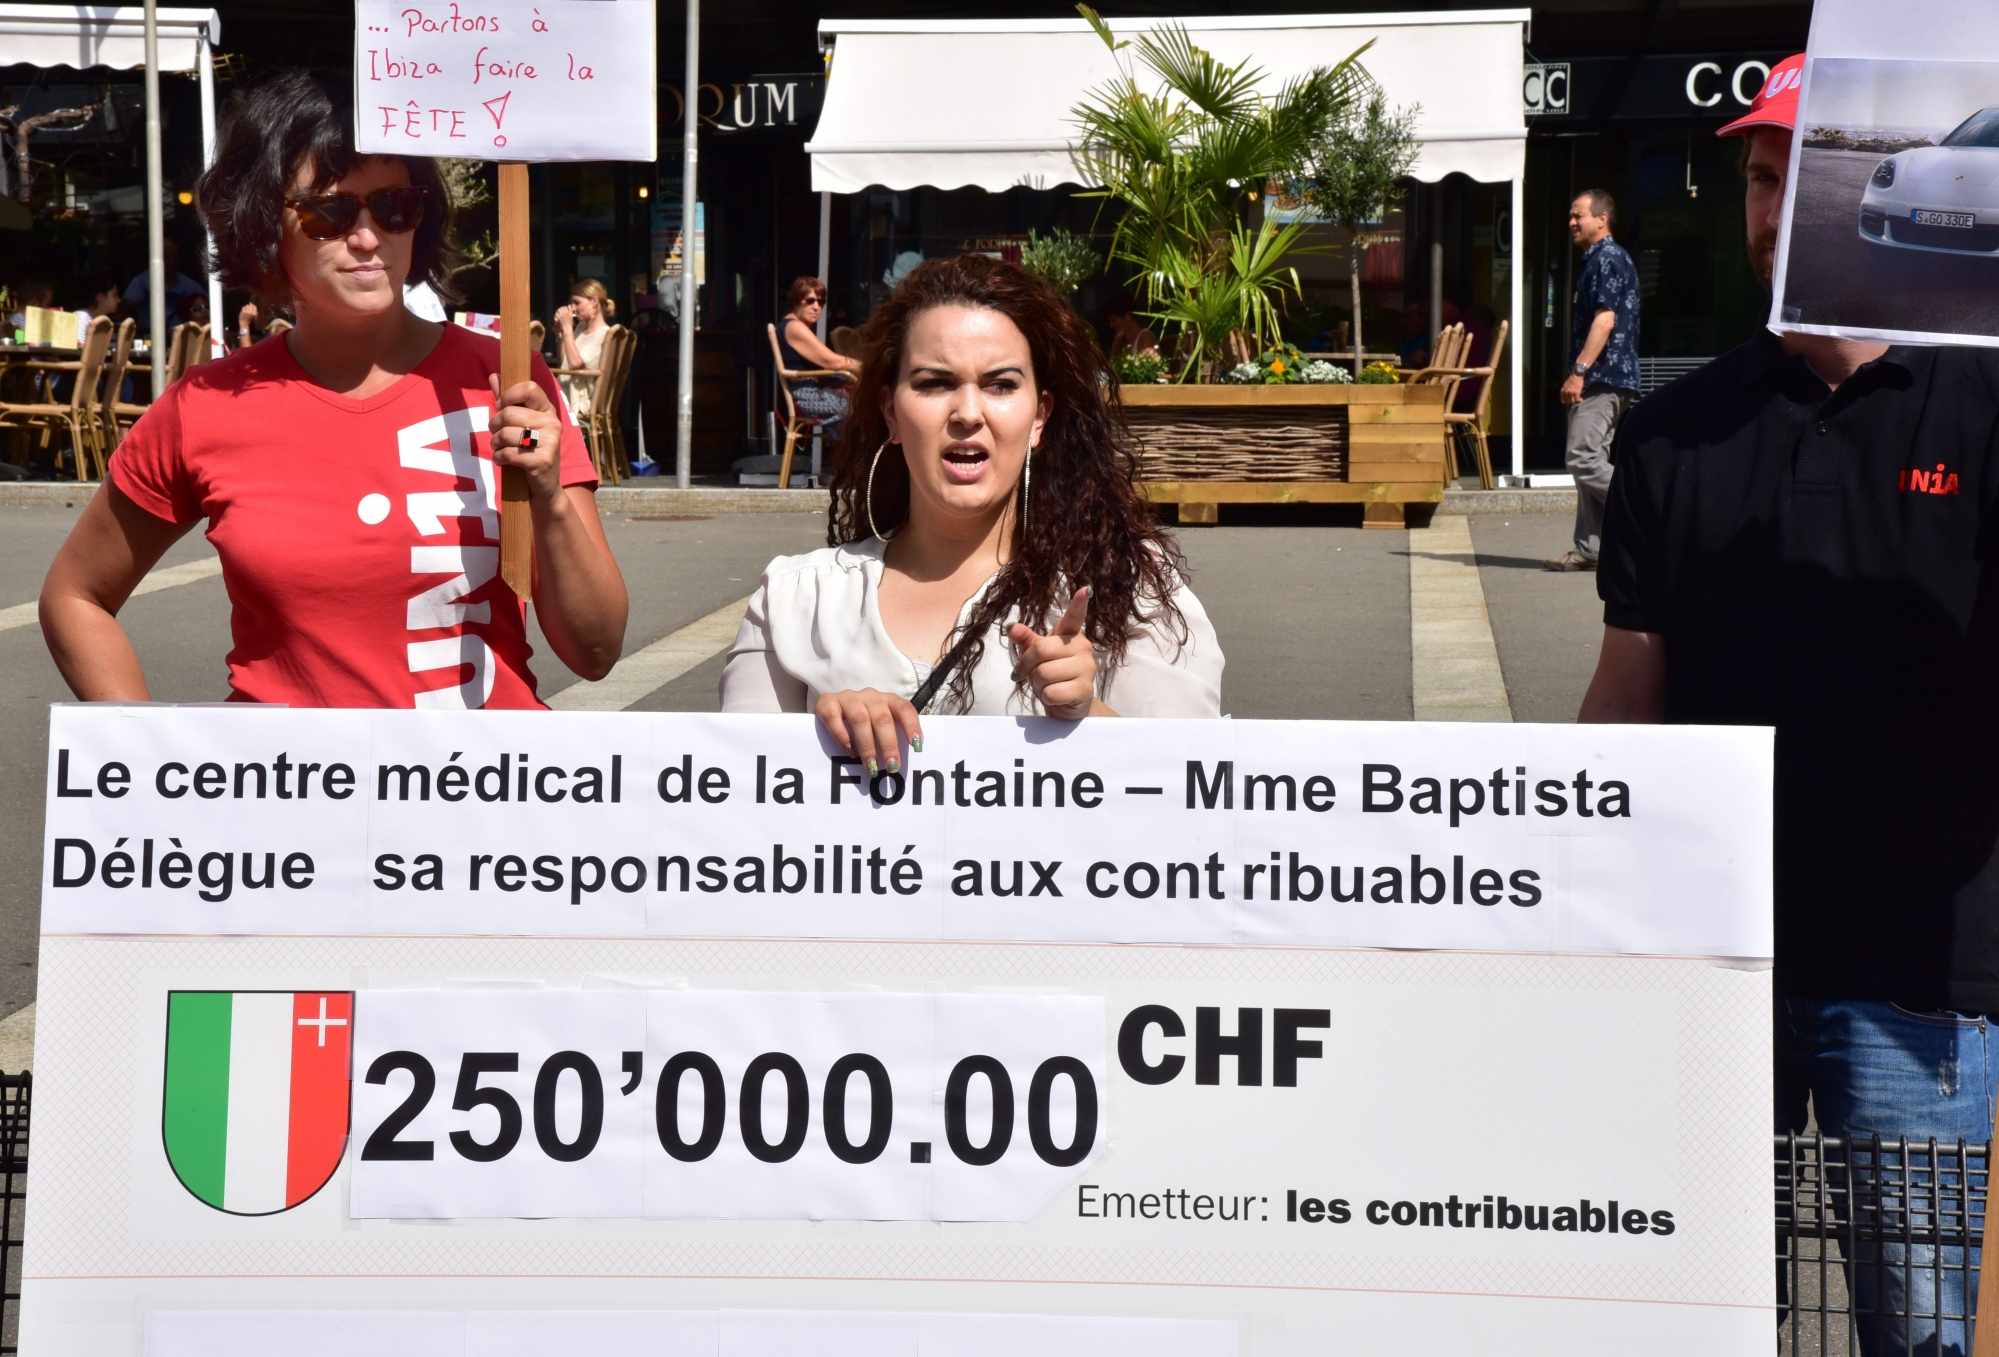 Manif UNIA contre le cabinet medical de groupe de la Fontaine
La Chaux de Fonds 15 juin 2017
Photo R Leuenberger